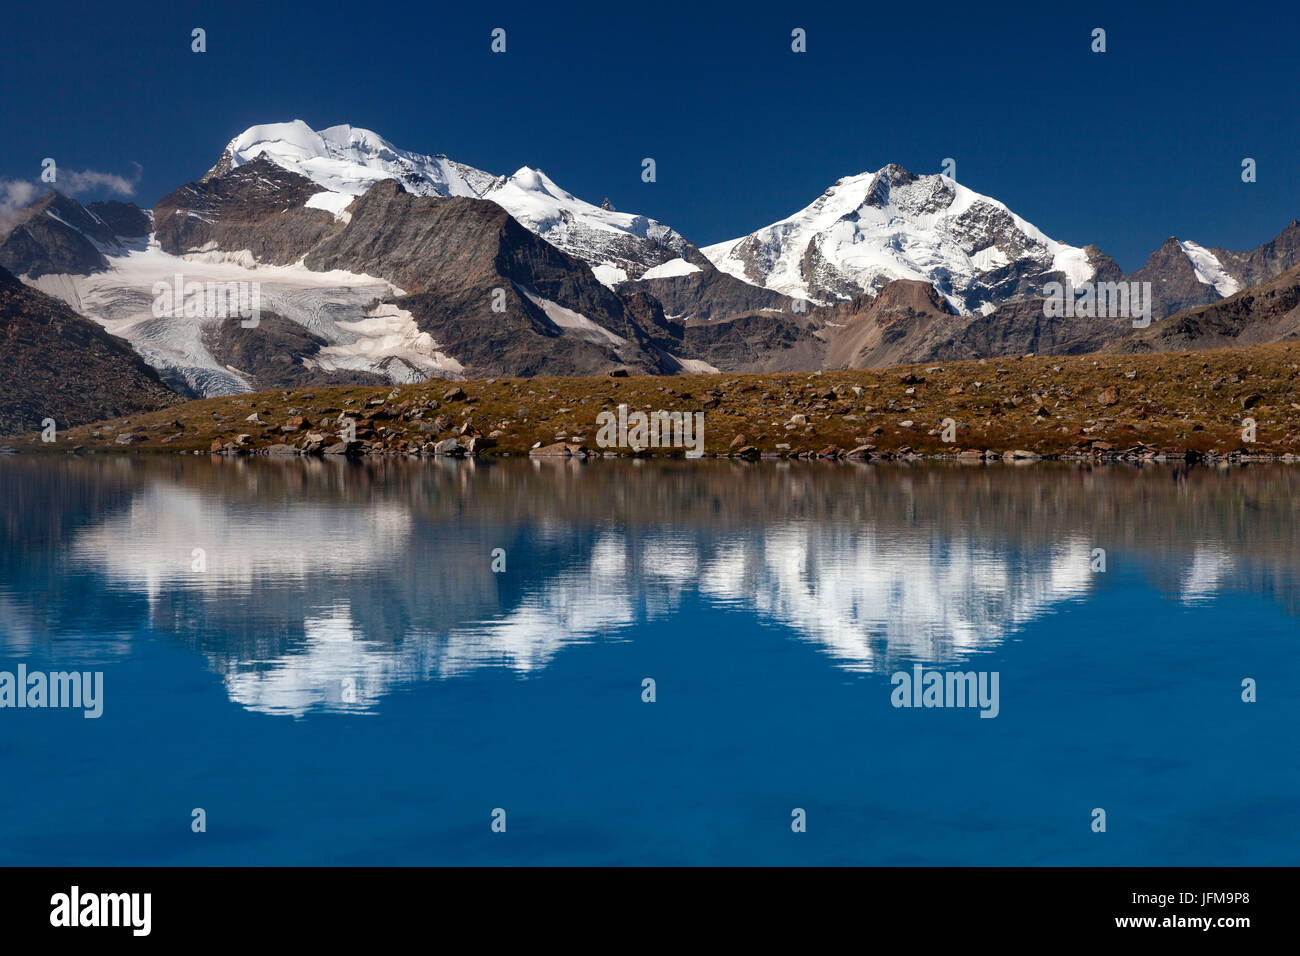 Piz Bernina reflection on Lago Vago, Livigno, Province of Sondrio, Lombardy, Italy Stock Photo